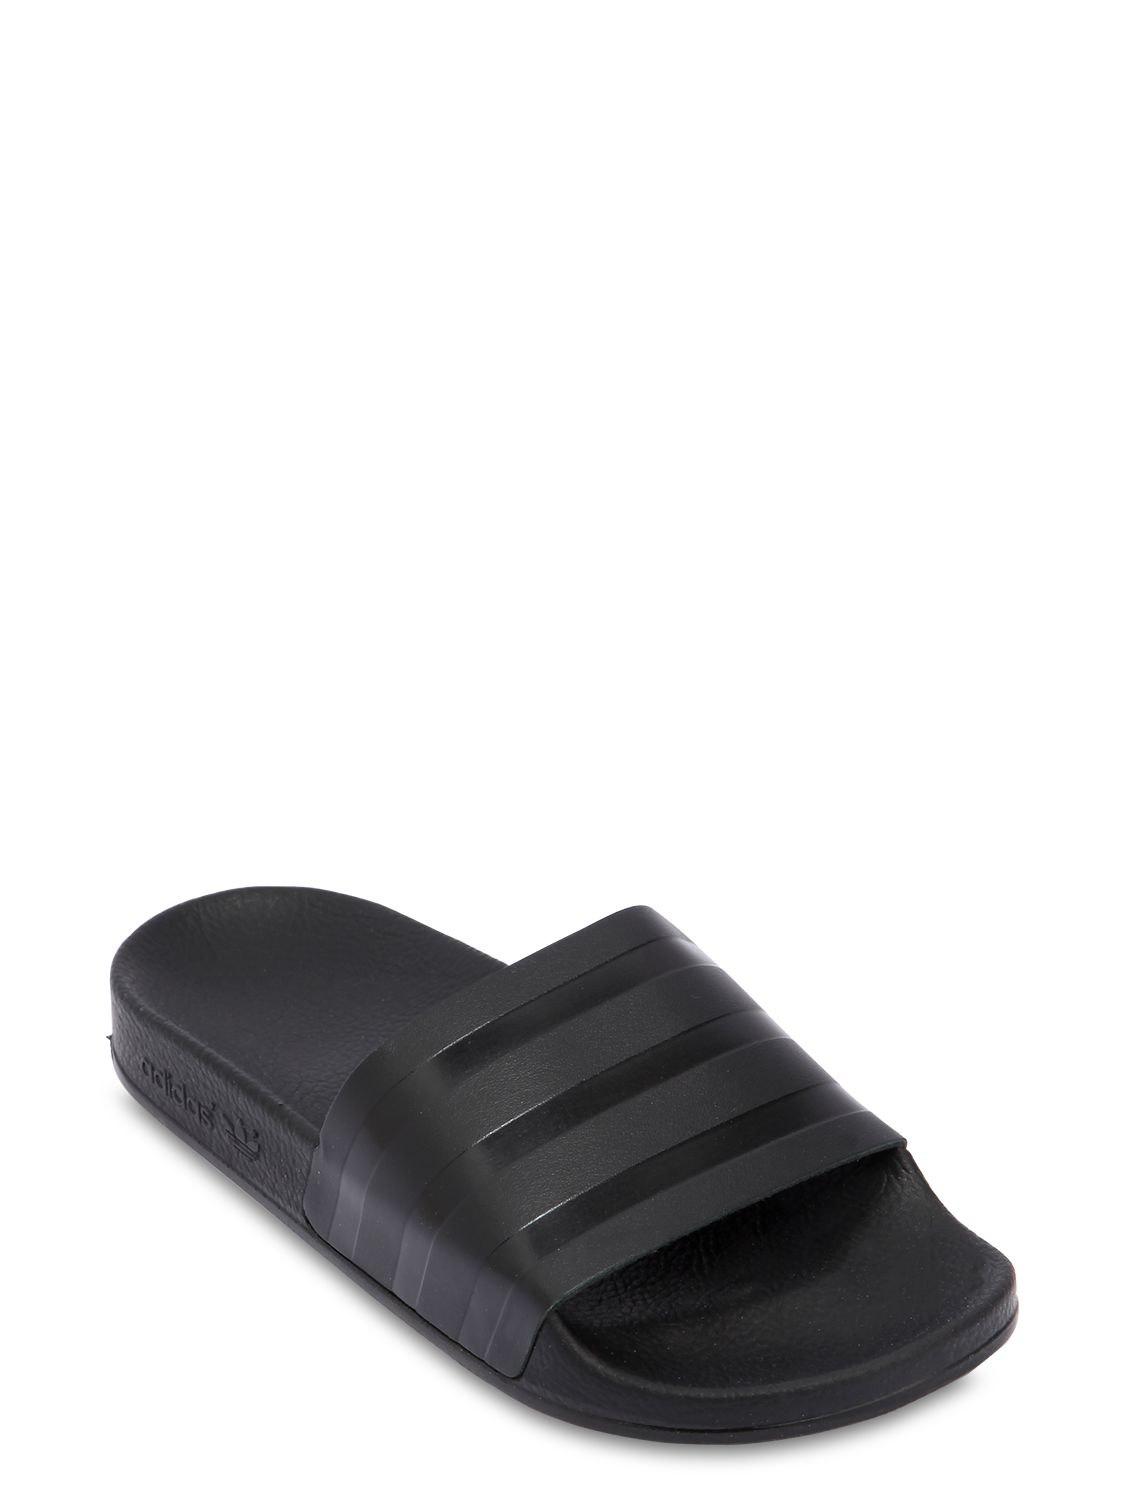 adidas adilette leather